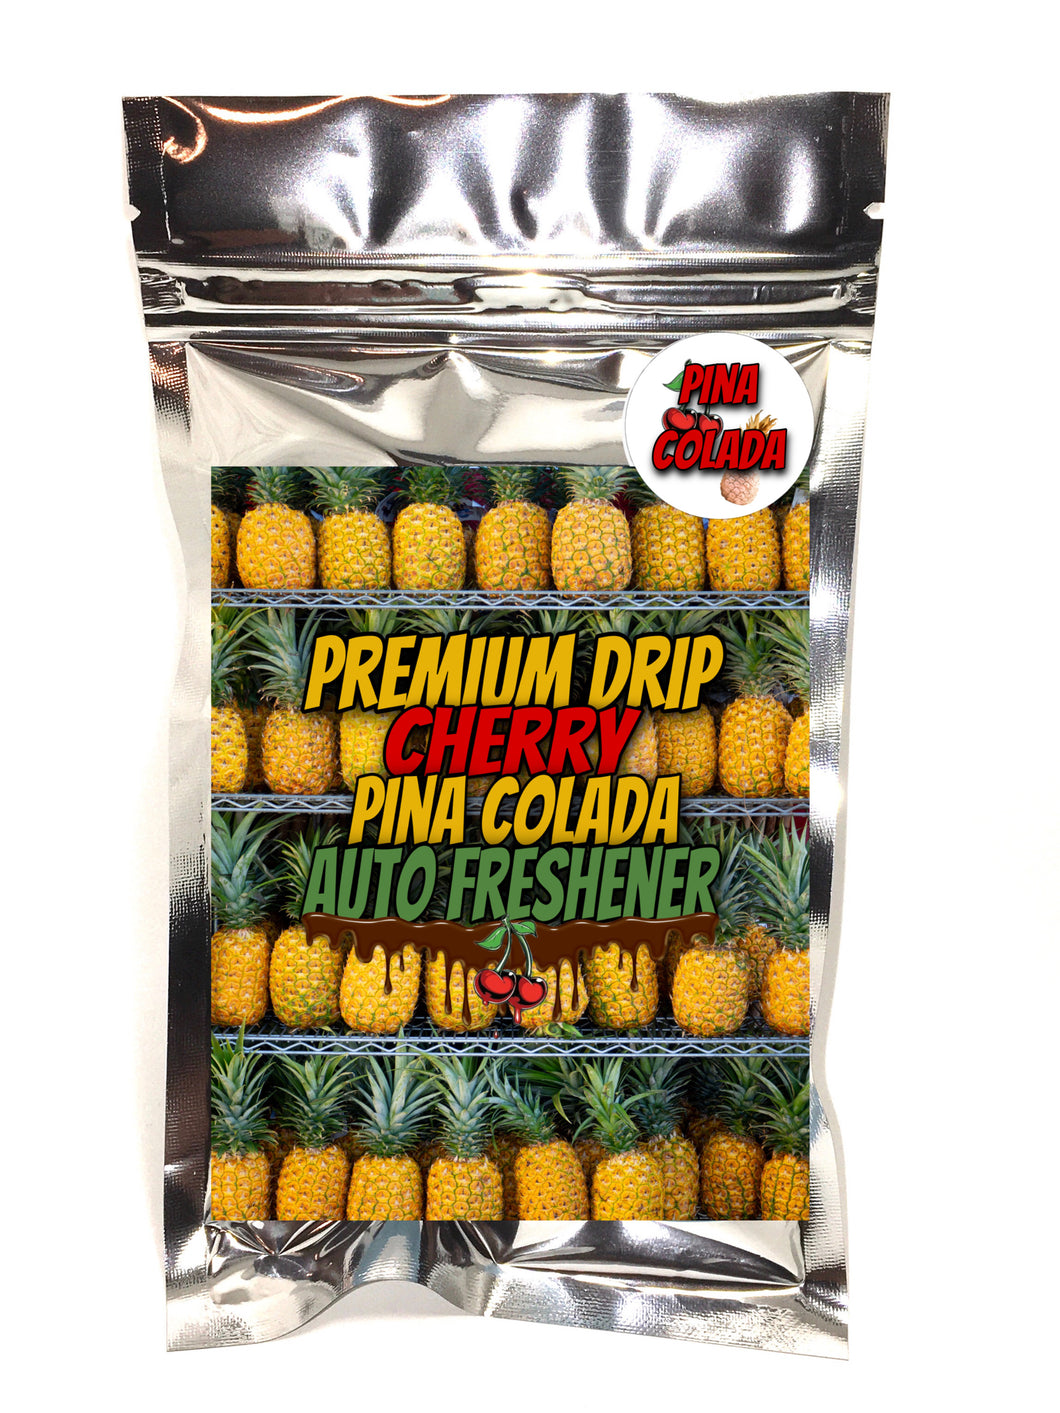 Premium Drip Auto Freshener Cherry Pina Colada Sauce Pack